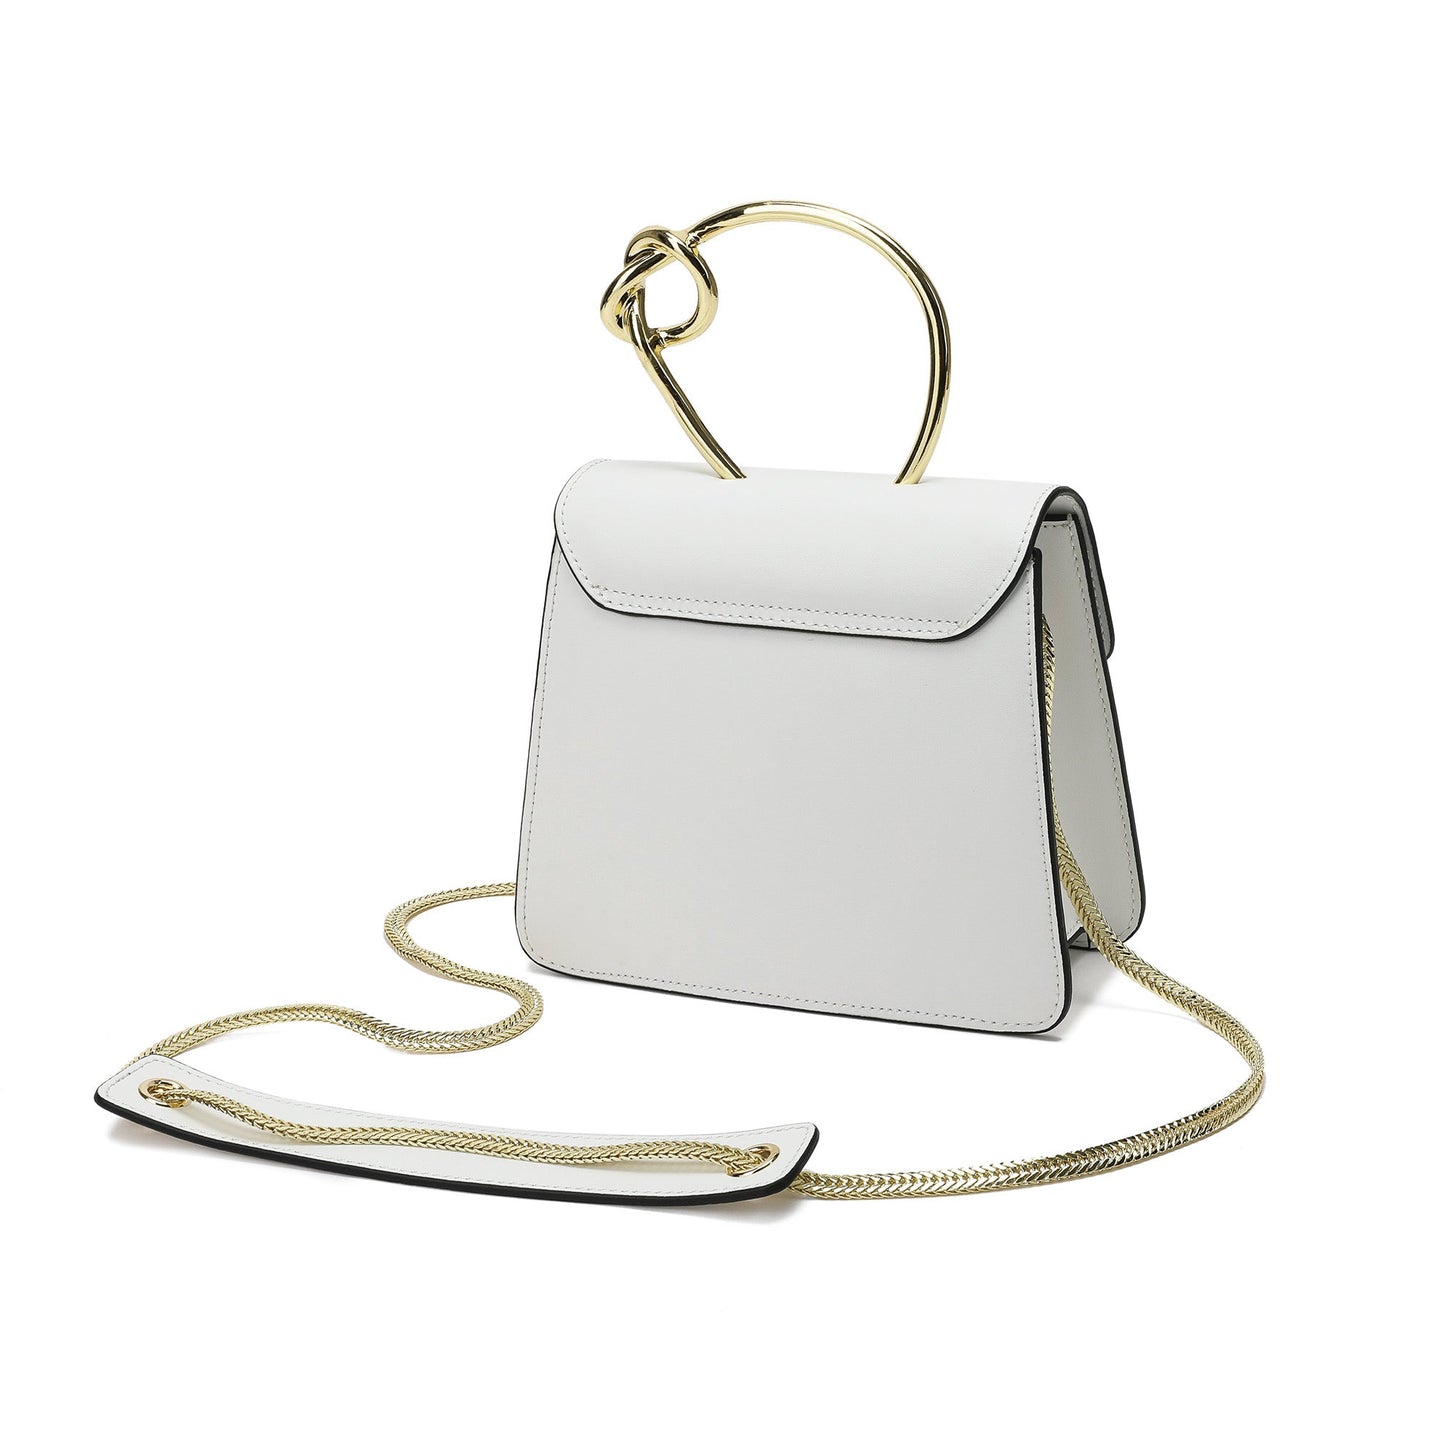 Sheepskin Leather Top-Handle Shoulder Bag